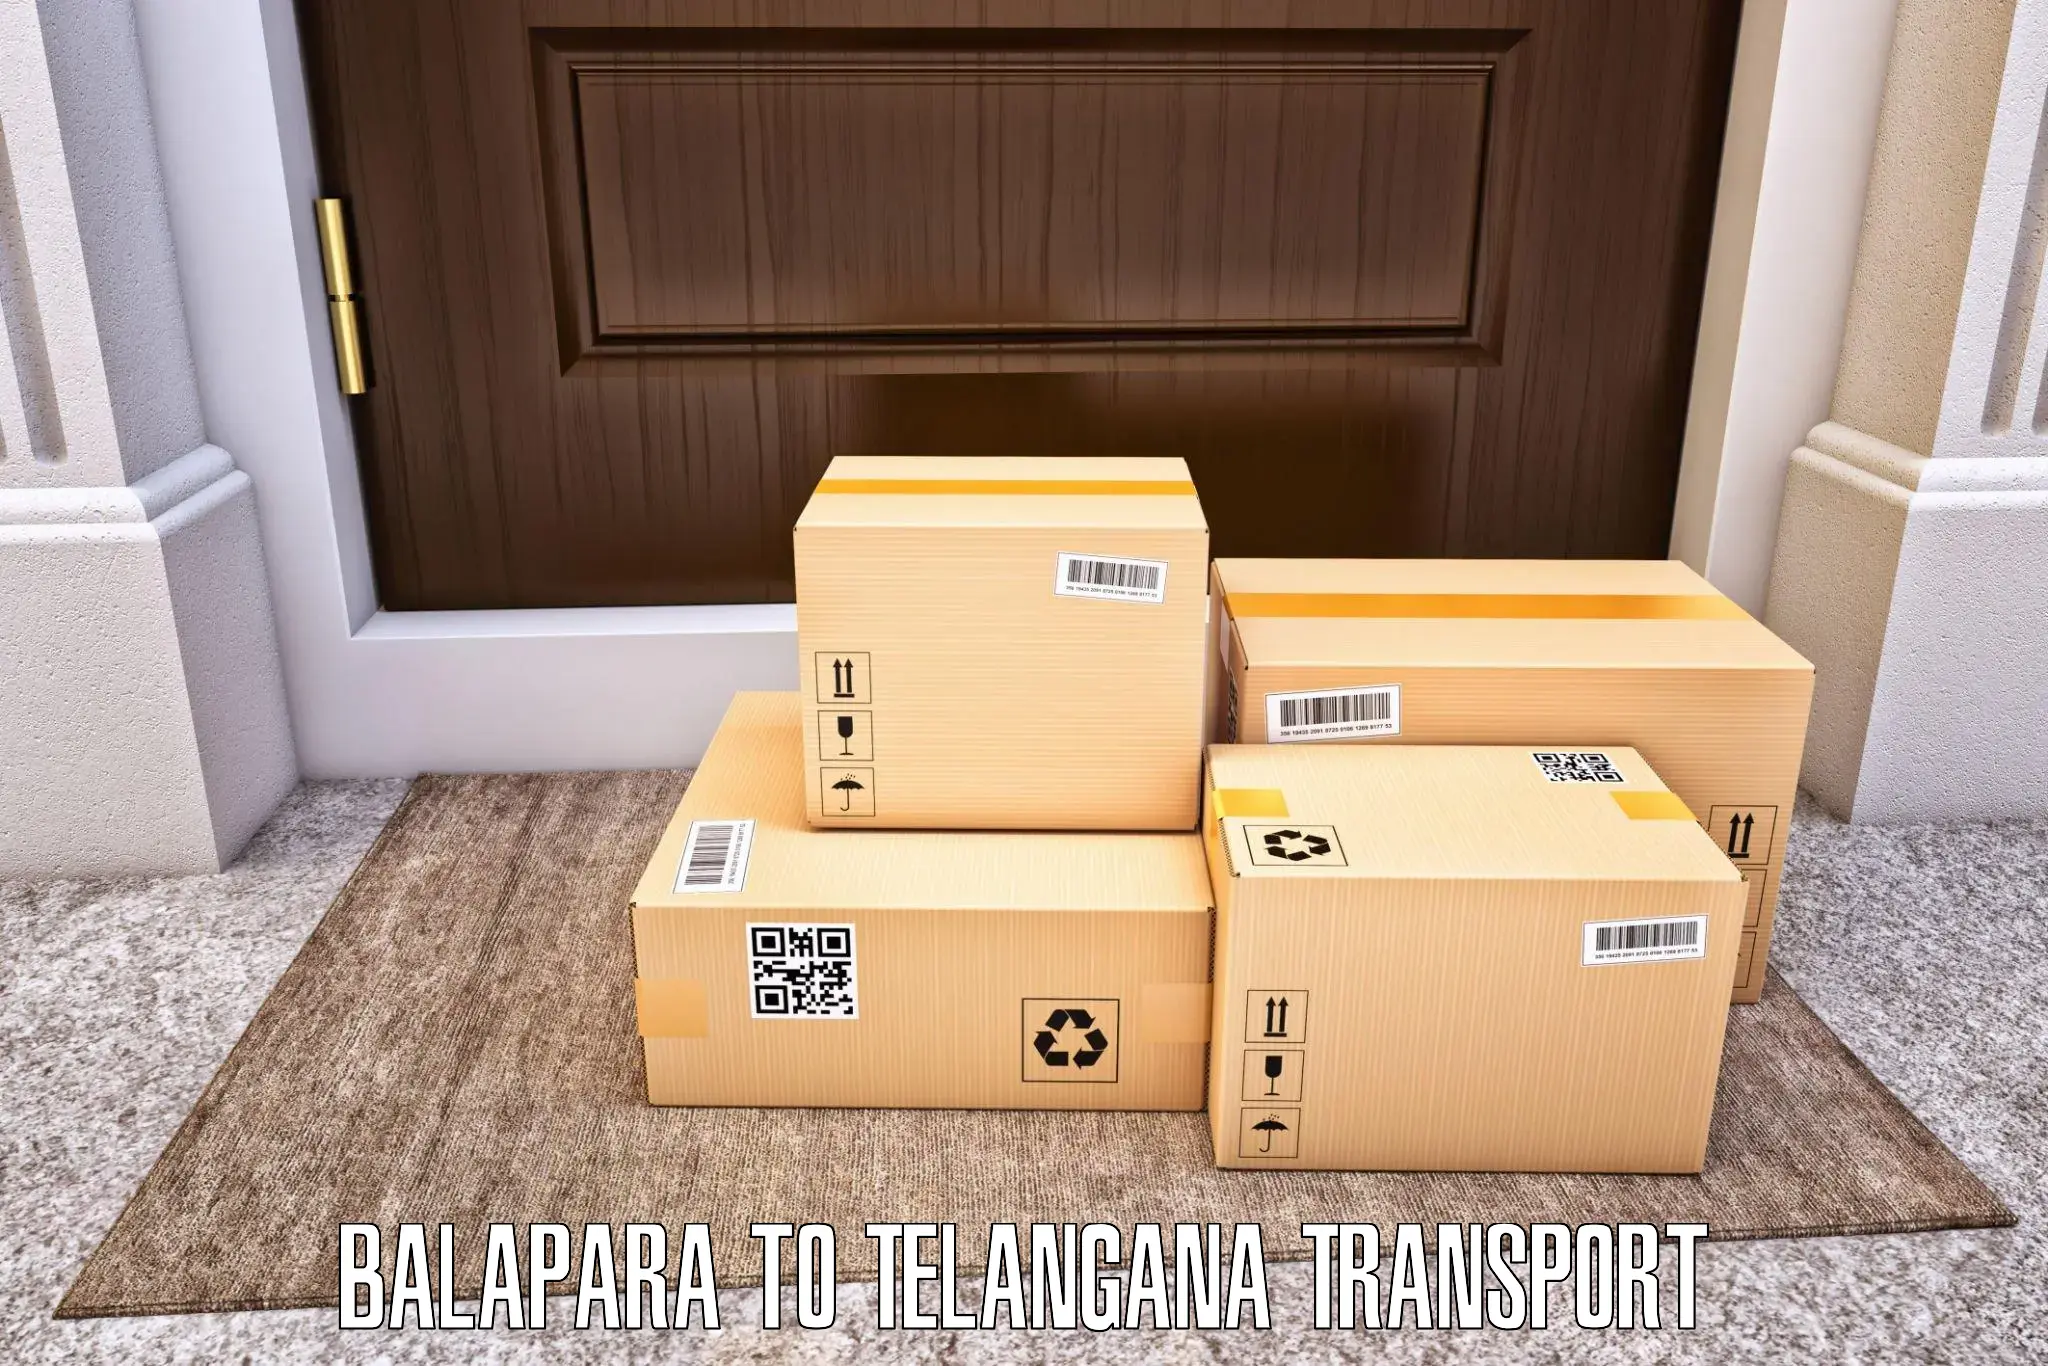 Transport in sharing in Balapara to Warangal